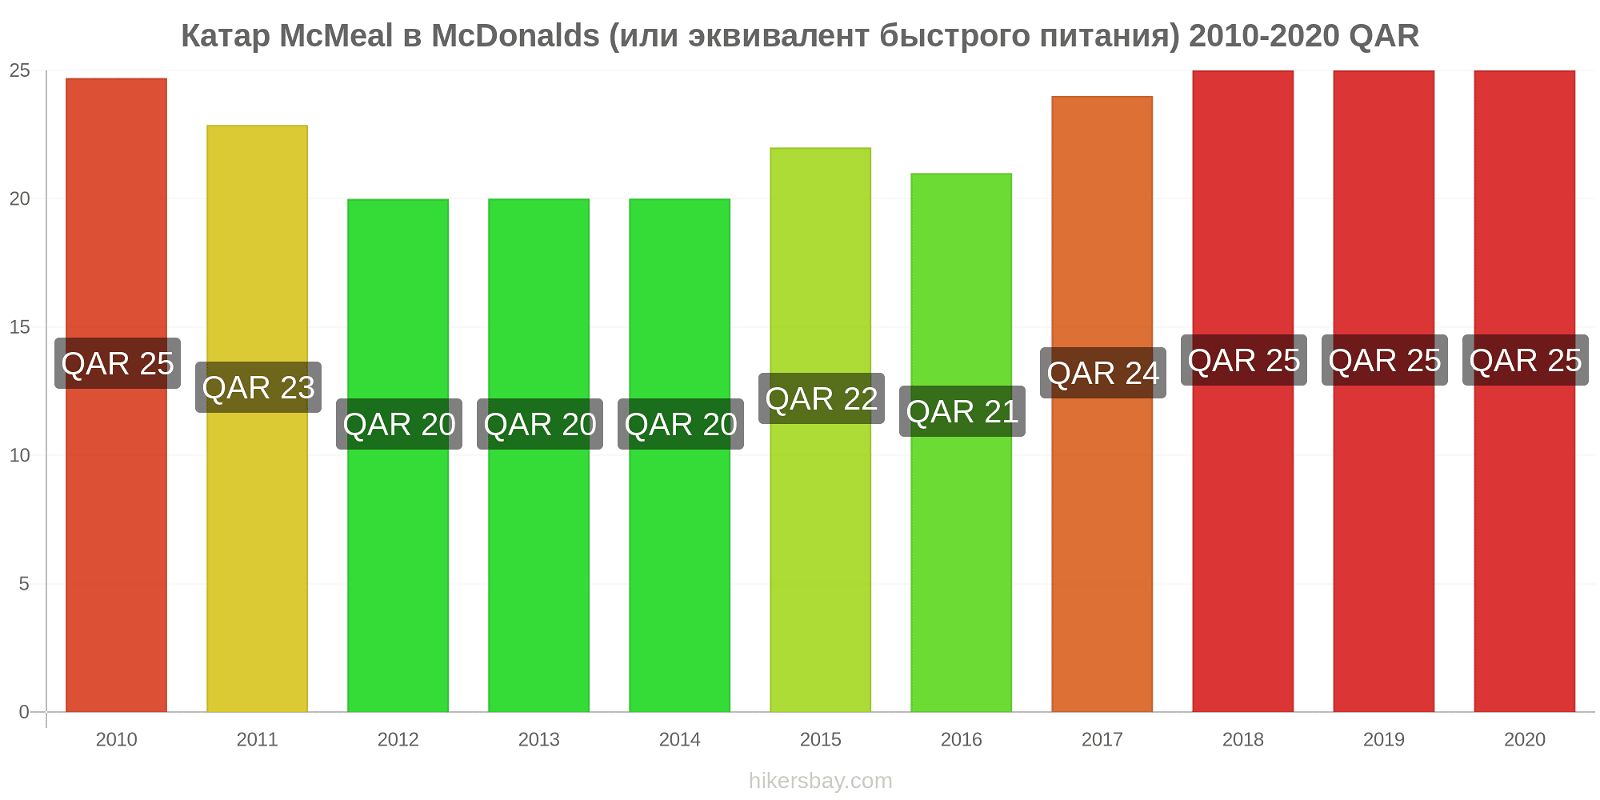 Катар изменения цен McMeal в McDonalds (или эквивалент быстрого питания) hikersbay.com